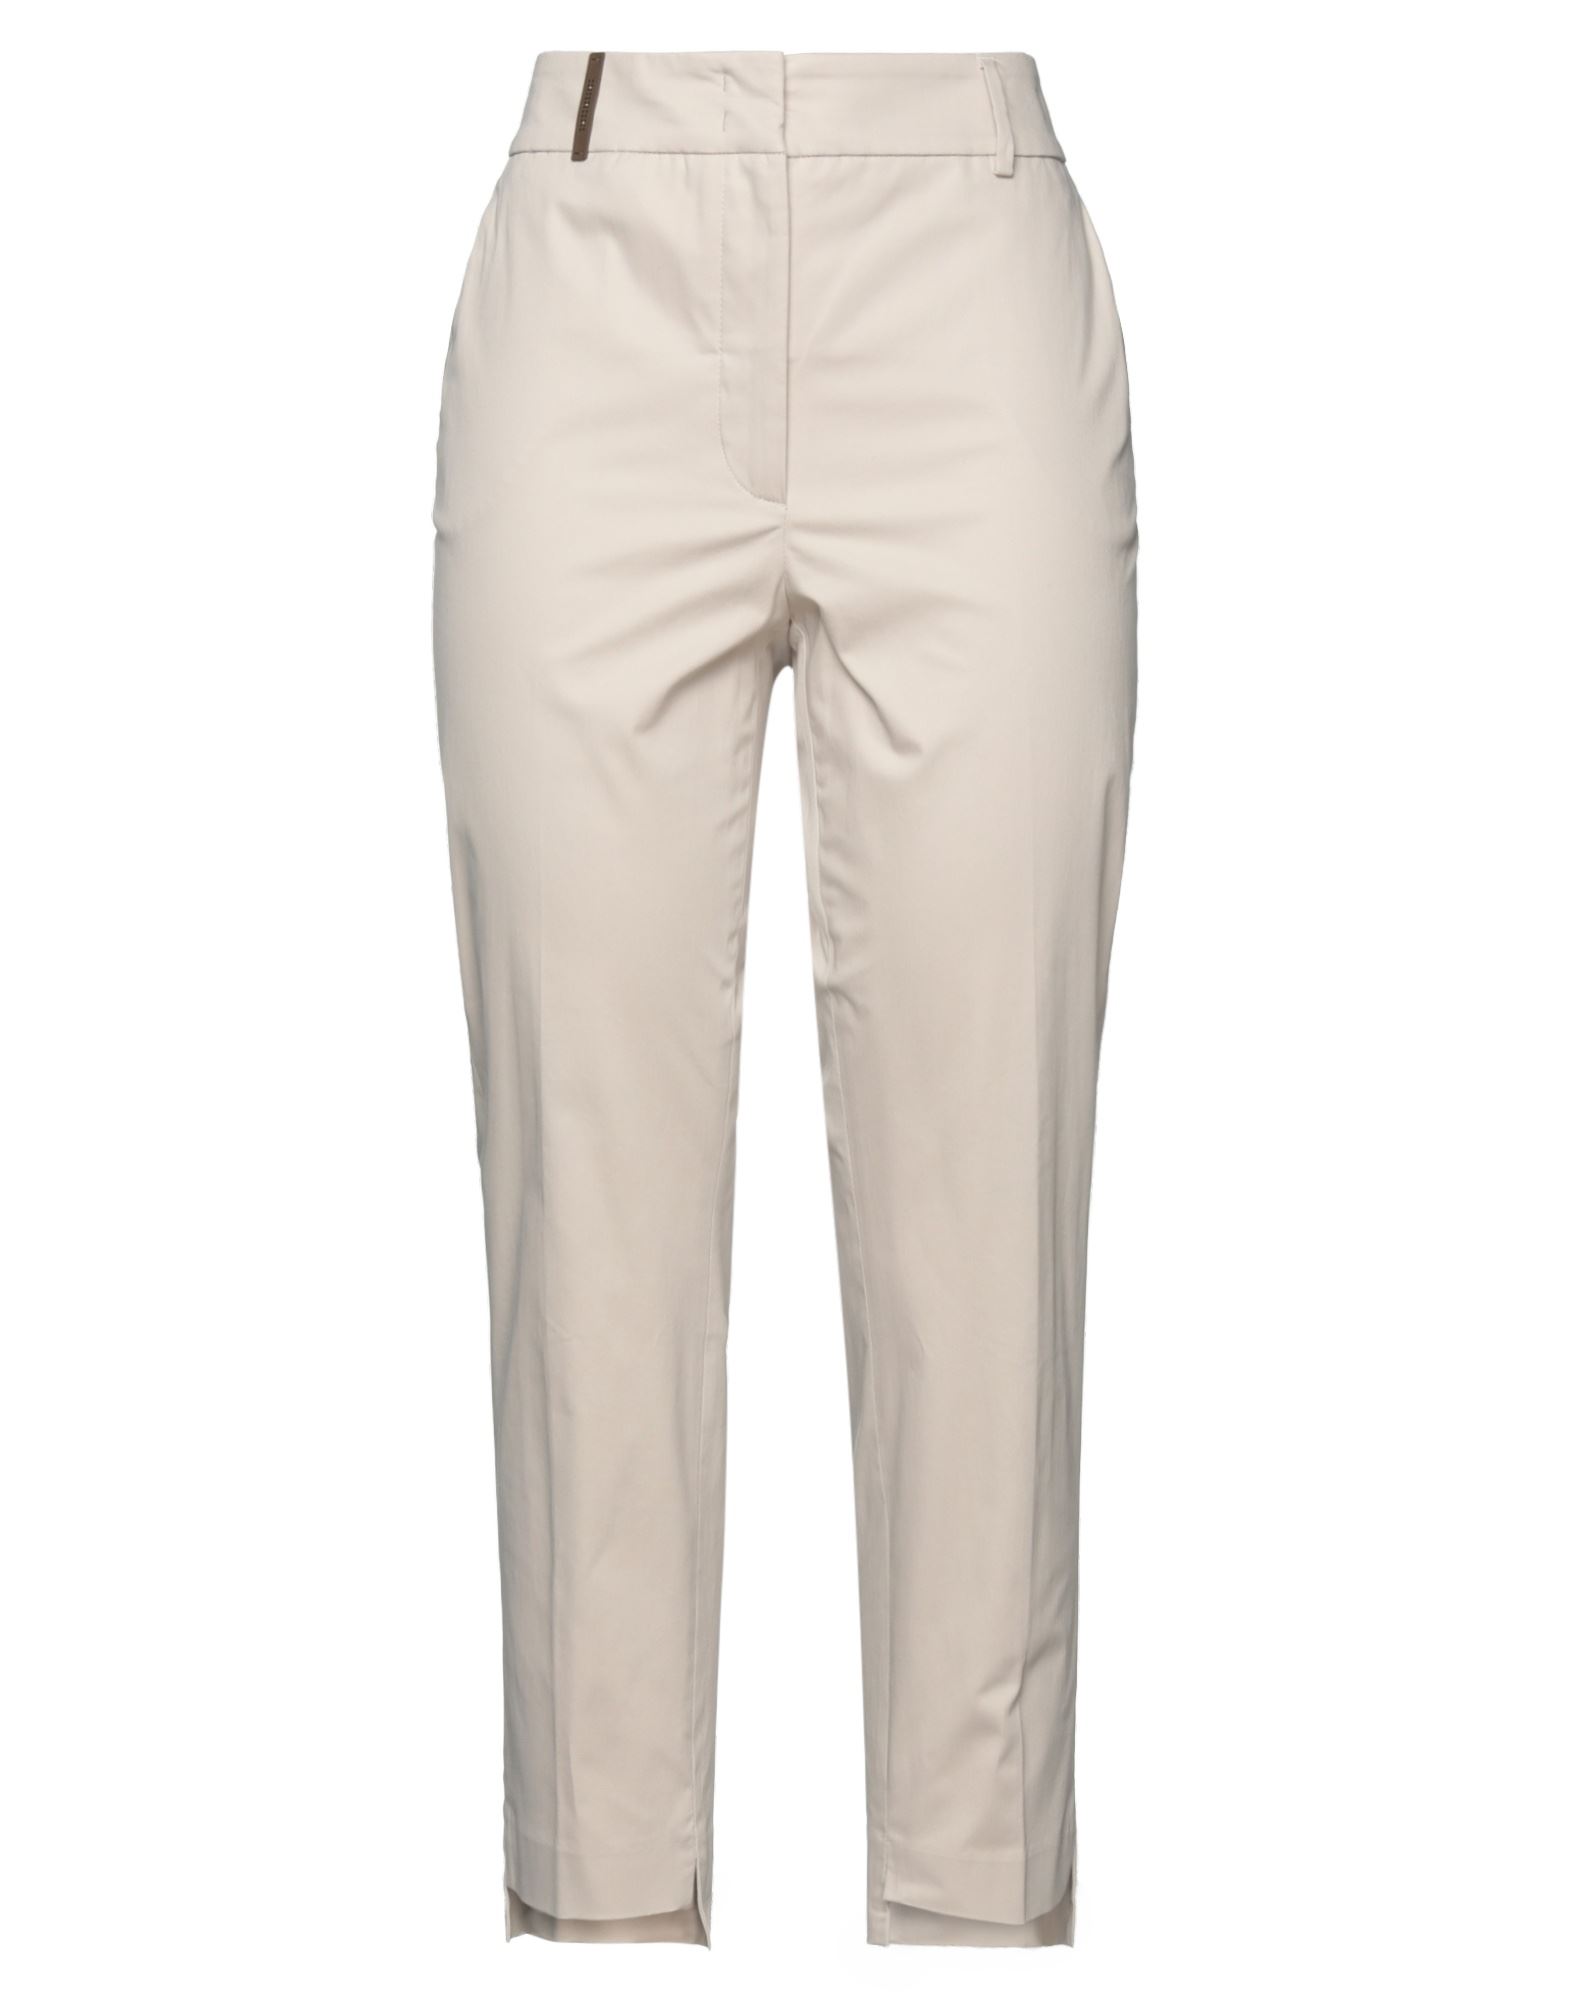 Shop Accuà By Psr Woman Pants Beige Size 2 Cotton, Elastane